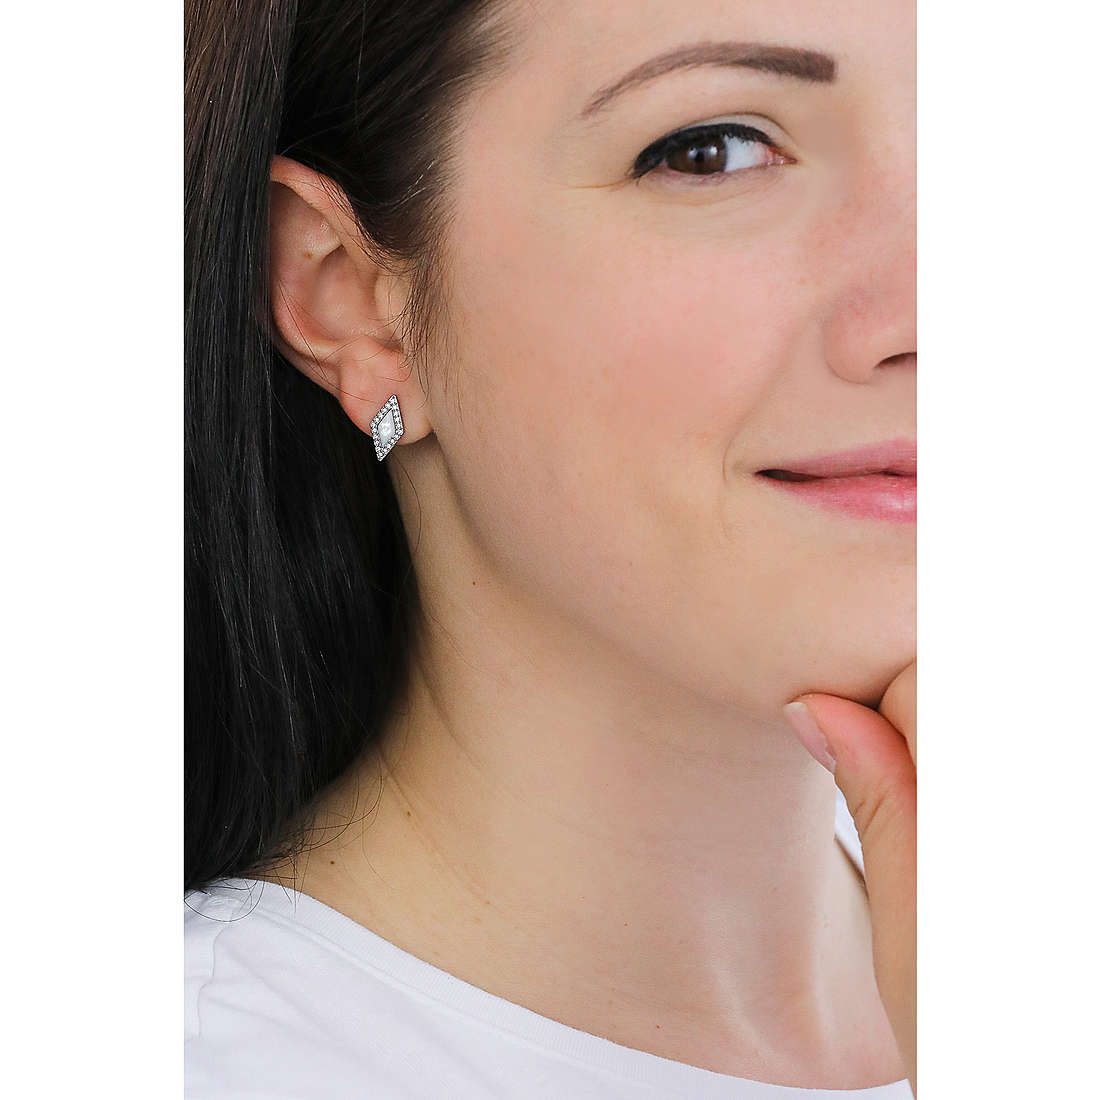 Fossil earrings Classics woman JF03657040 wearing